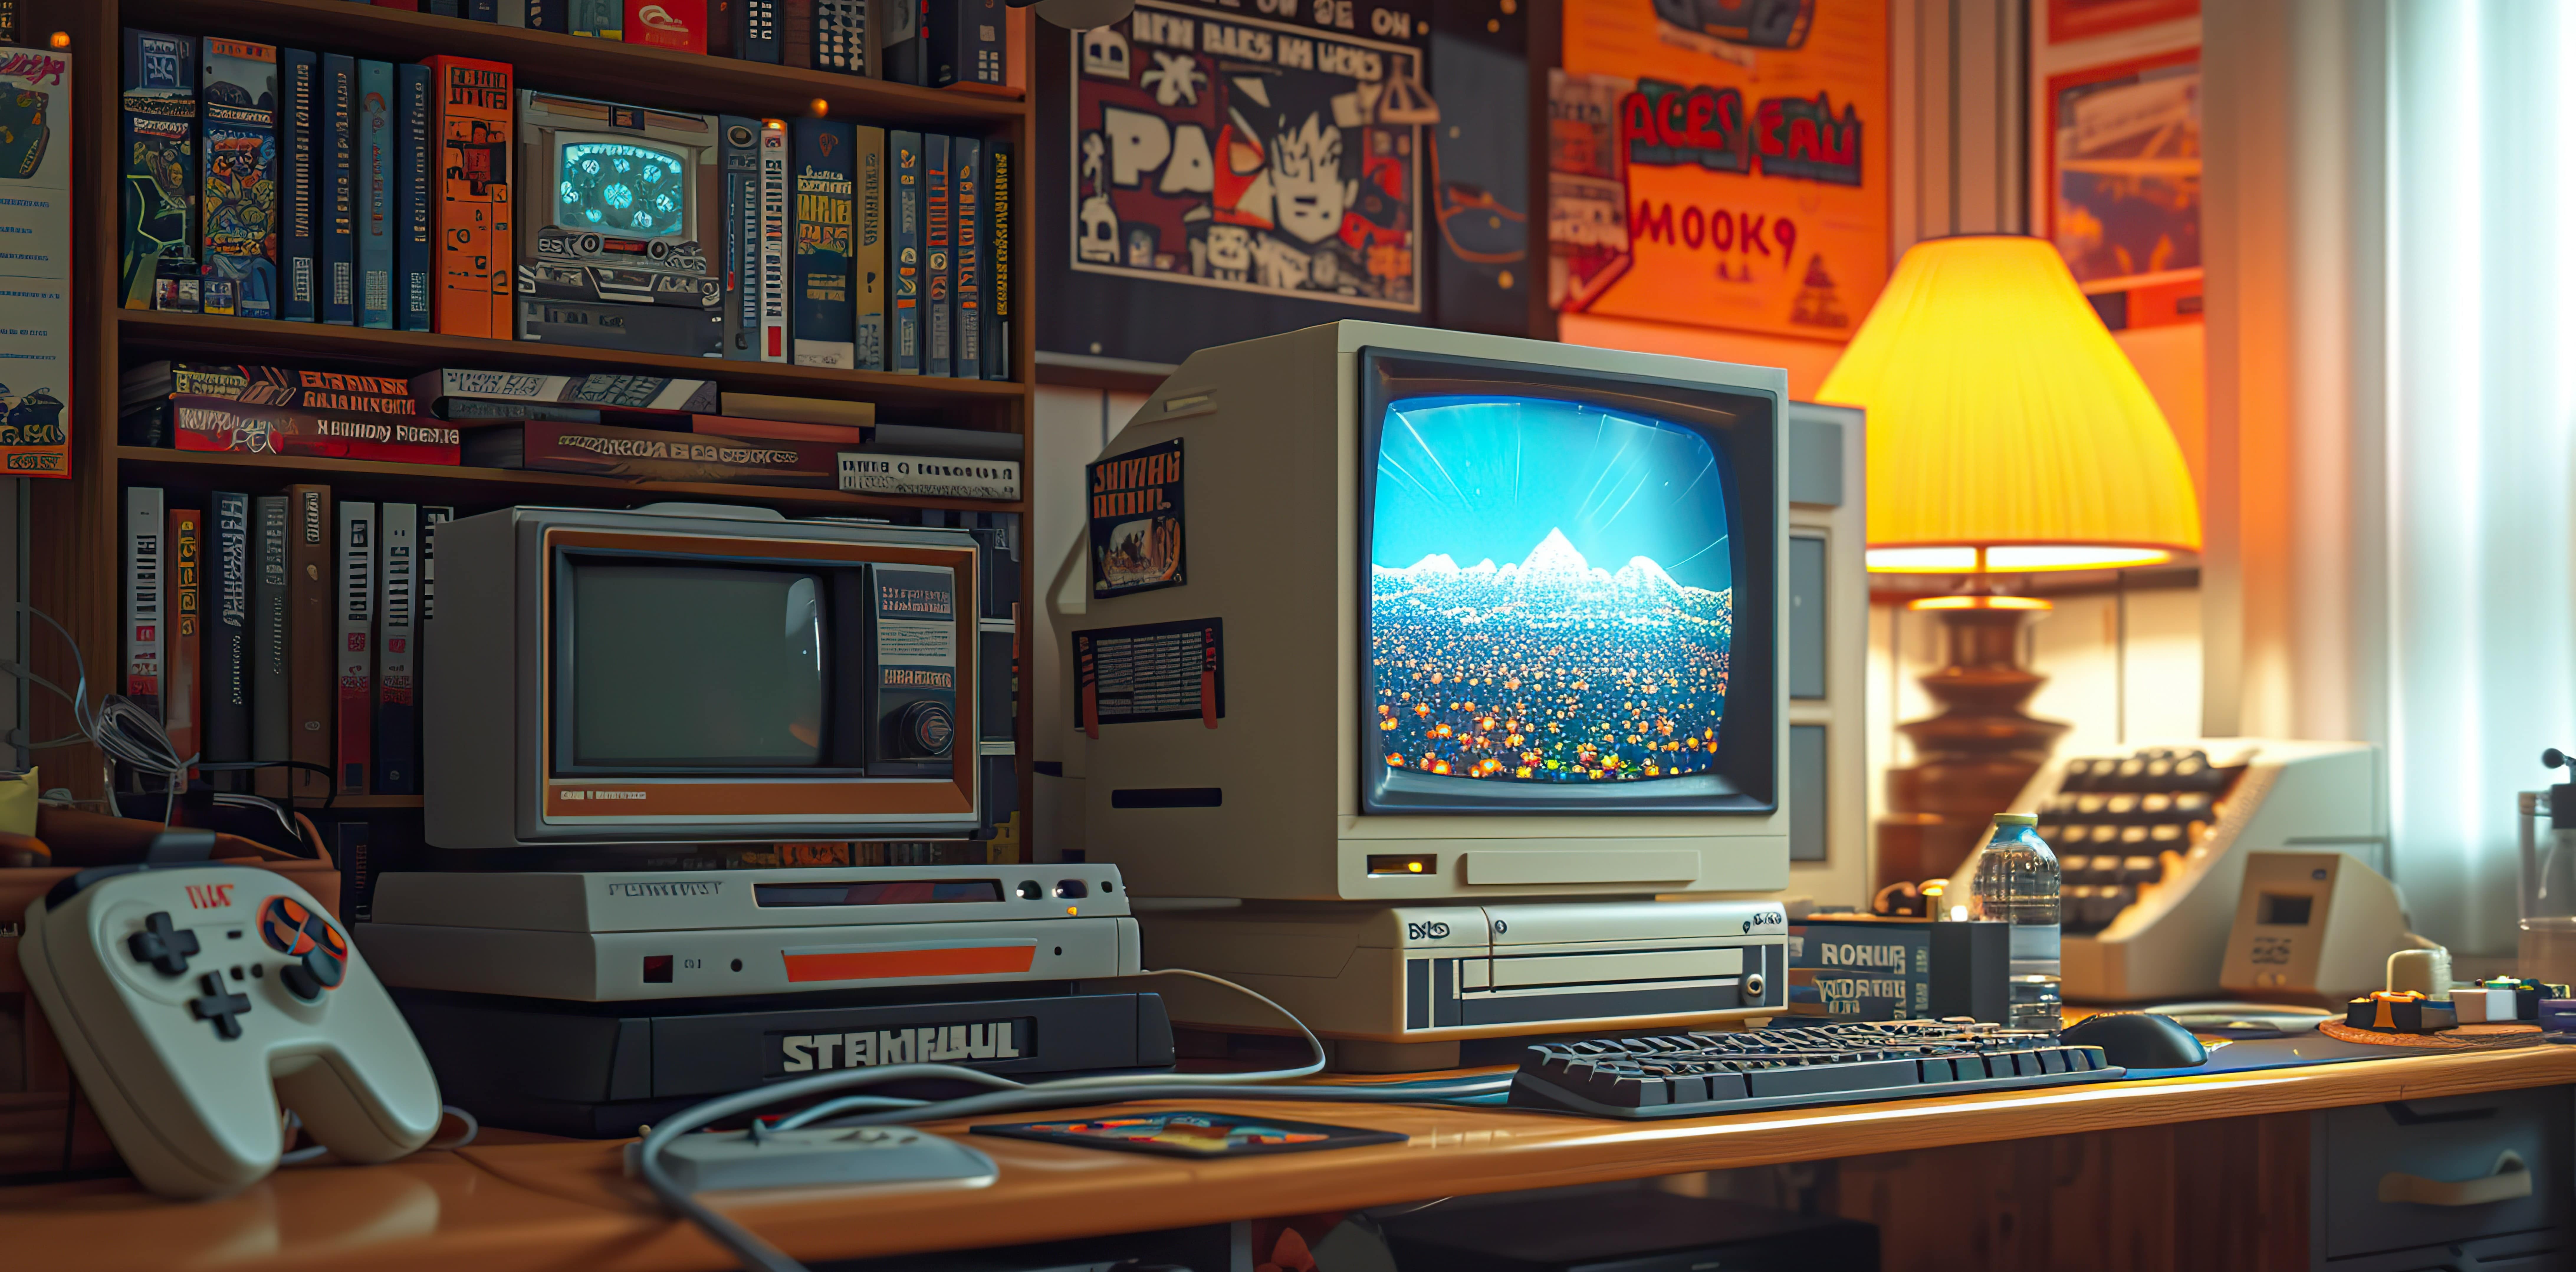 An image showcasing a display of retro gaming memorabilia.